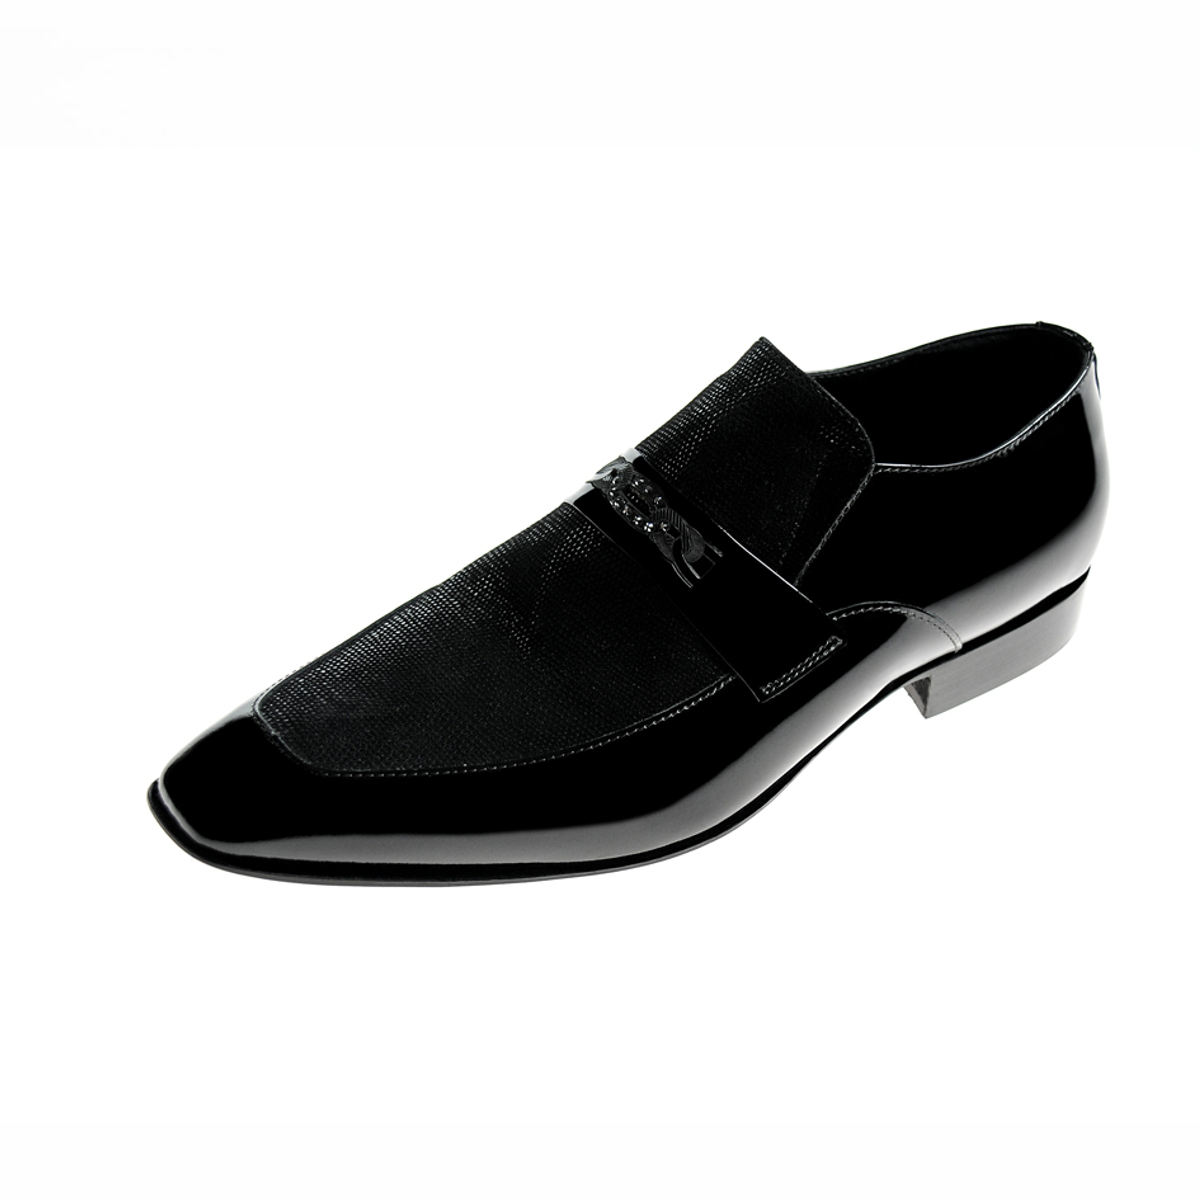 Pantofi 005 FST 10 - Gentlemen's Tailoring Exclusive